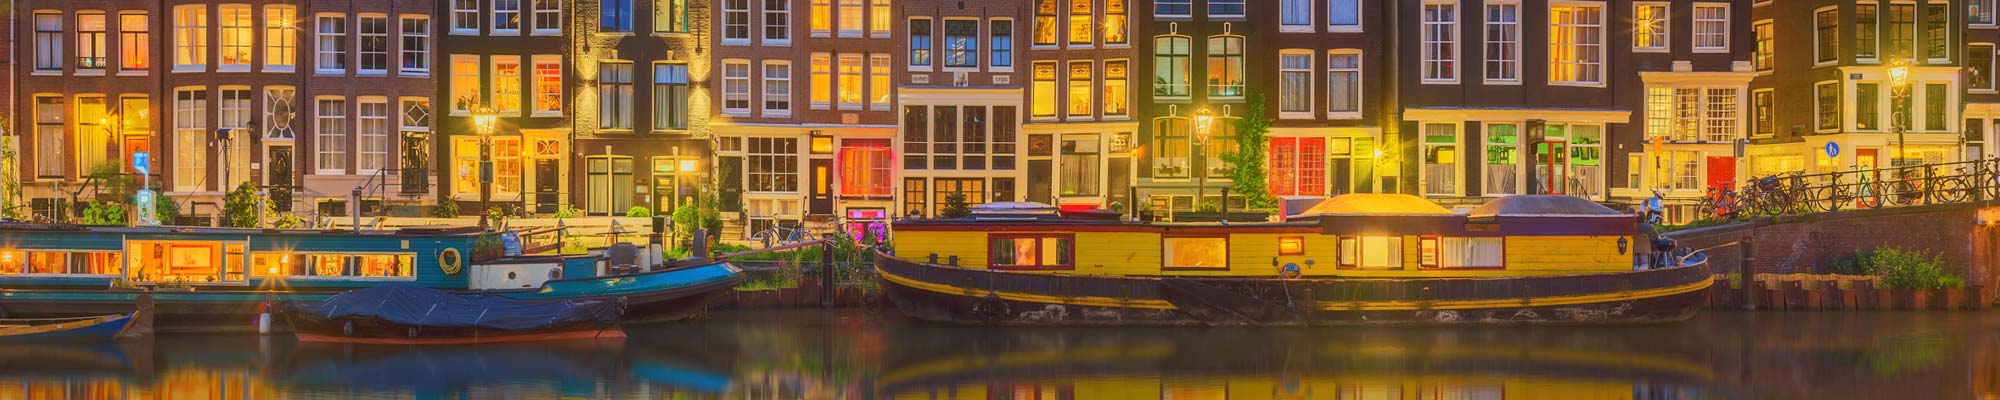 Hausbote auf Kanal vor historischen Häusern - als Symbolbild für den Paketversand nach Rotterdam / Niederland